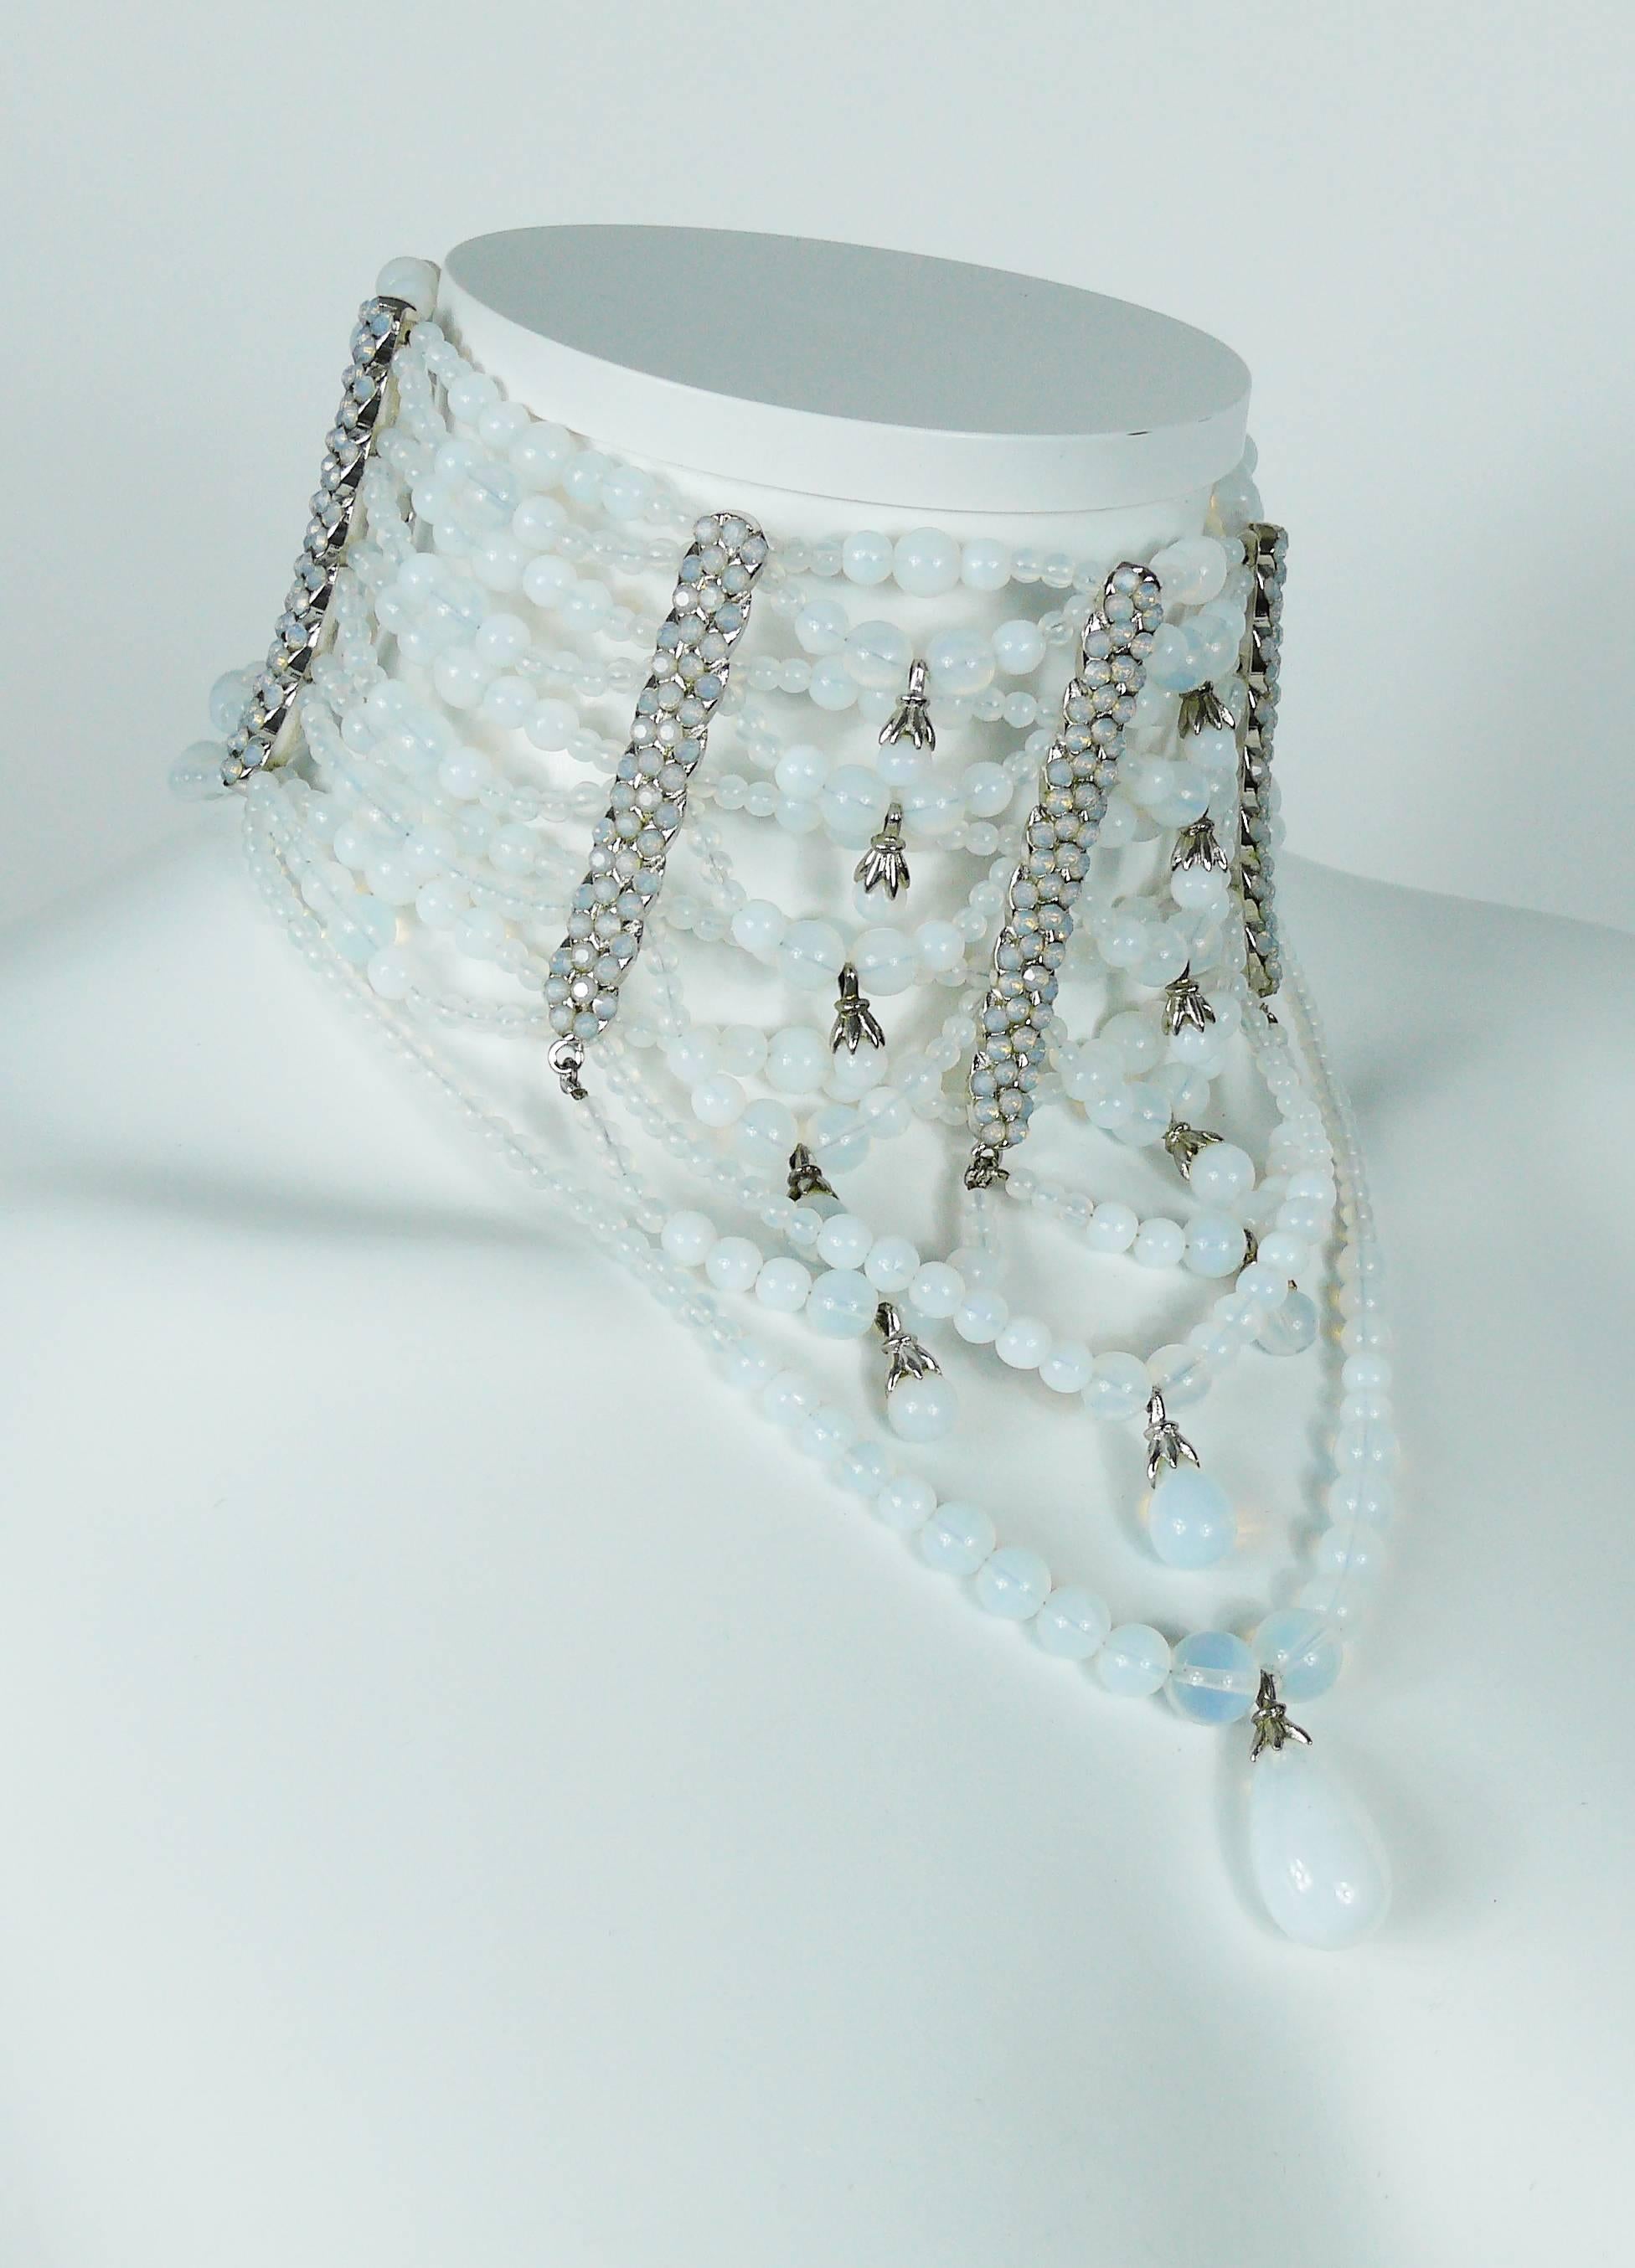 JOHN GALLIANO for CHRISTIAN DIOR rare collier de draperie opalescente. 

Créé dans les ateliers du parurier ROBERT GOOSSENS au début des années 2000. 

Magnifique motif drapé composé d'un ensemble de perles en forme de pierre de lune dans un cadre